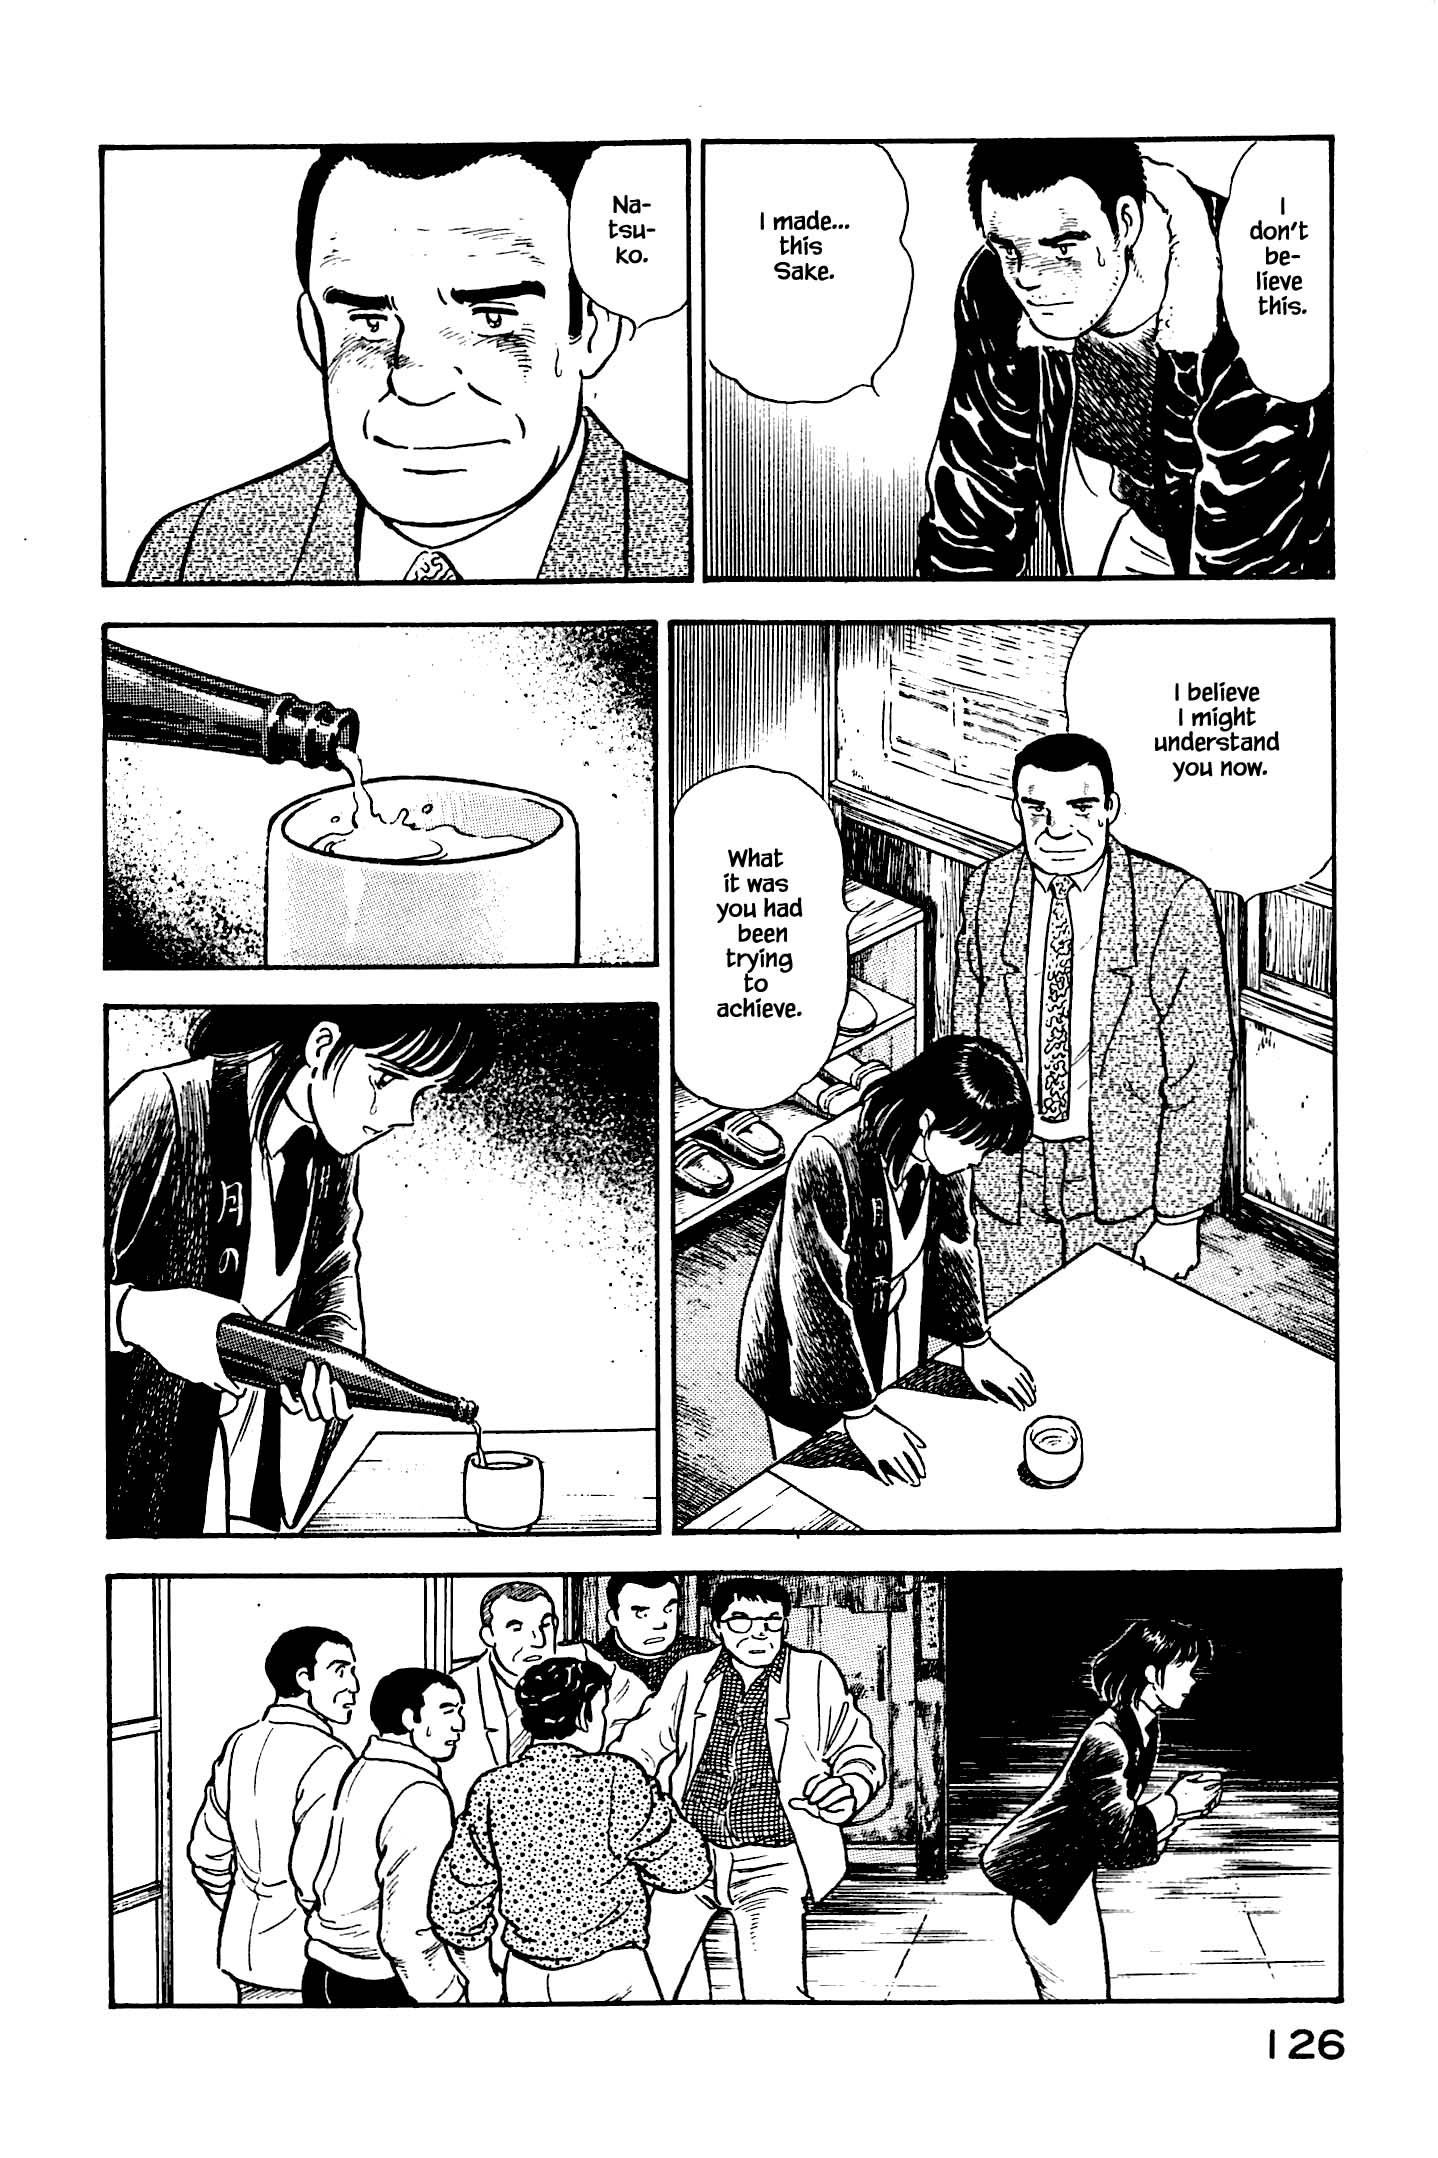 Natsuko's Sake - chapter 127 - #5